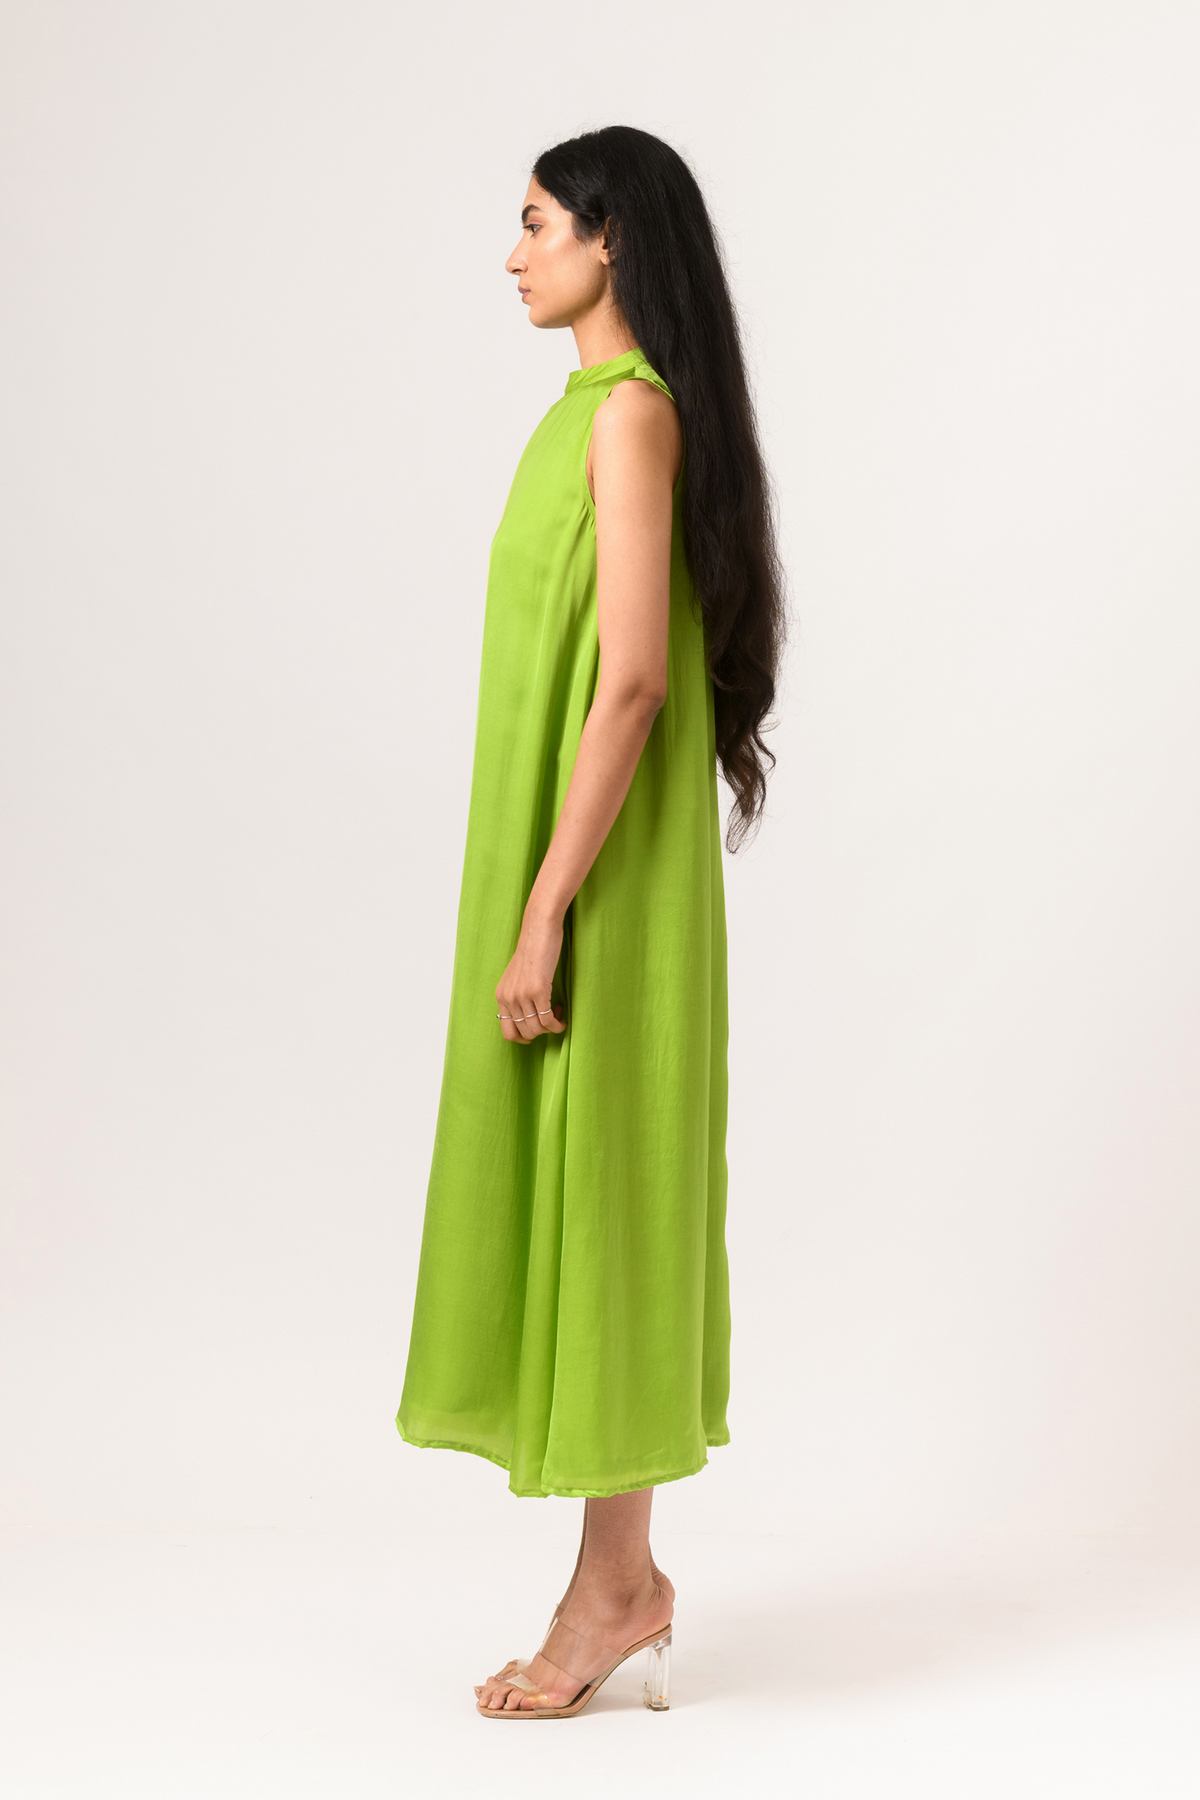 Ecru green halter neck dress